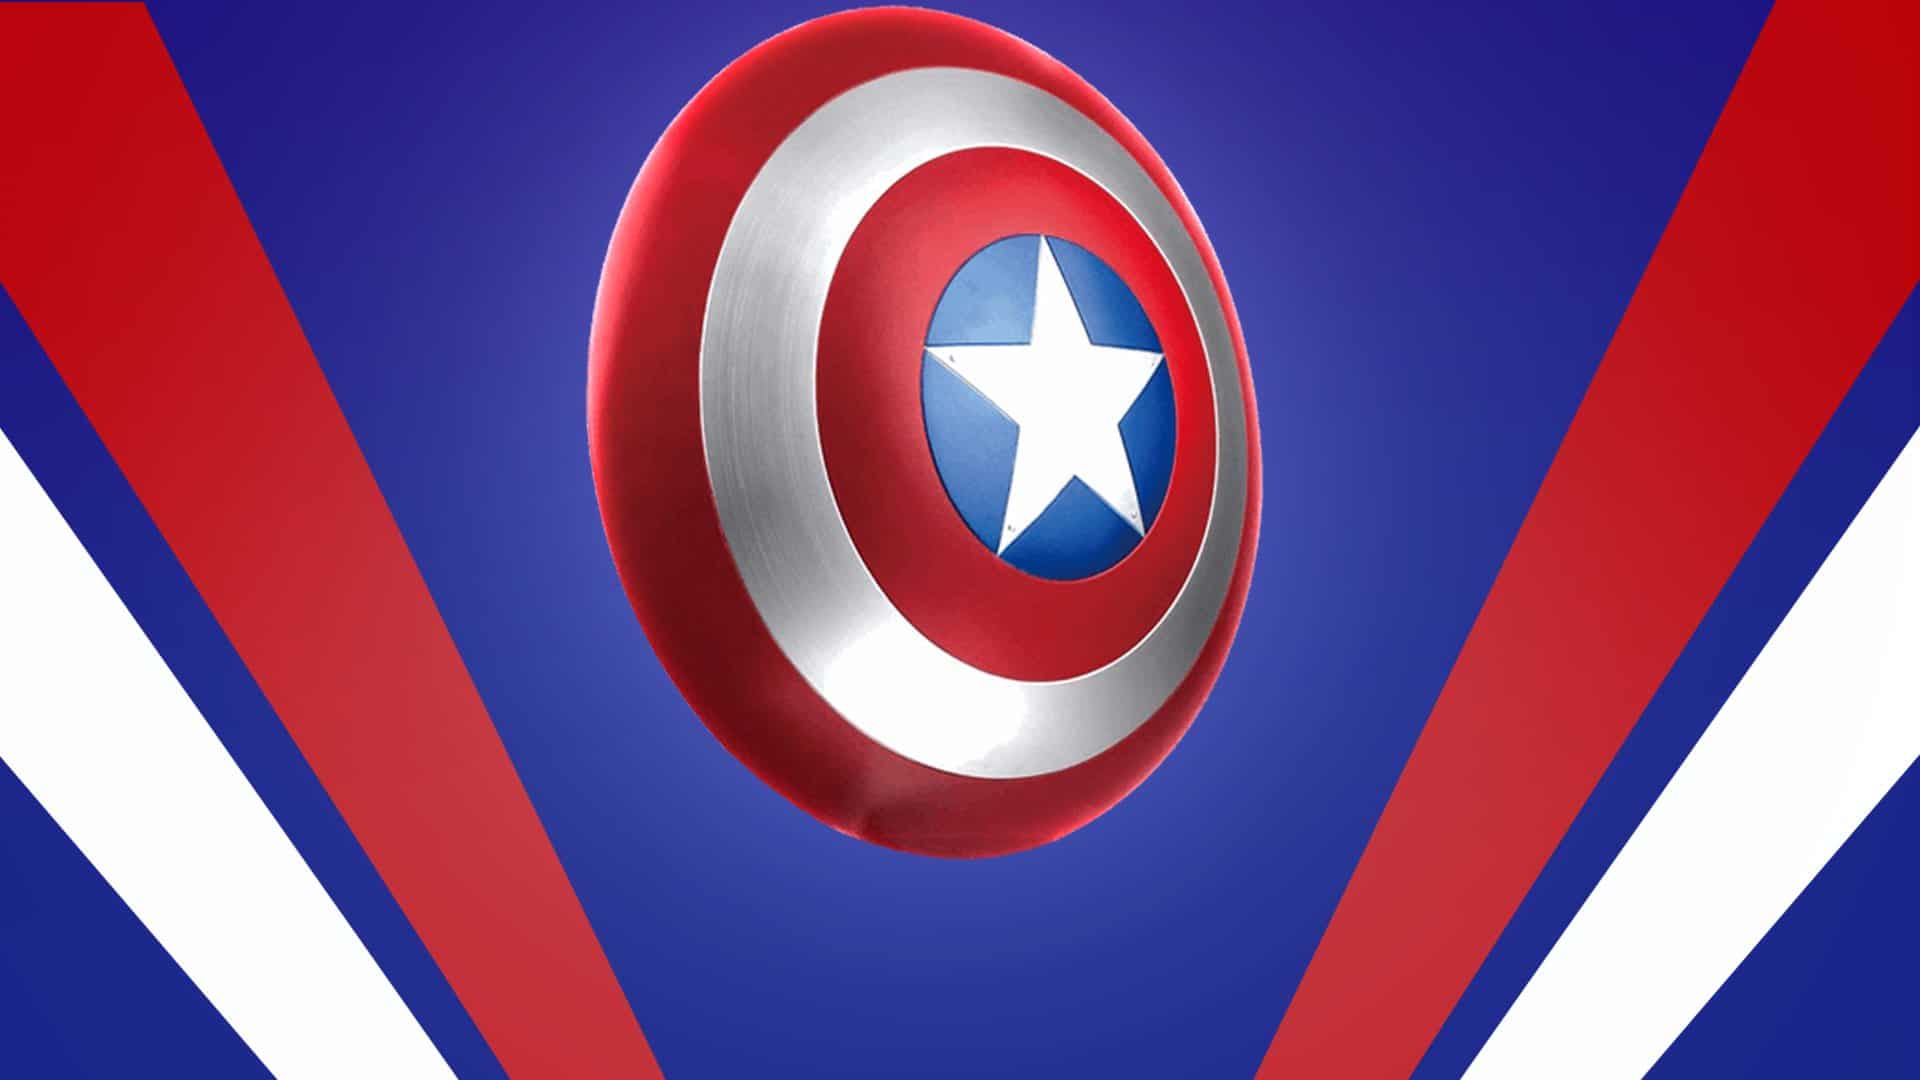 Captain America Fortnite Skin And Proto Adamantium Shield In